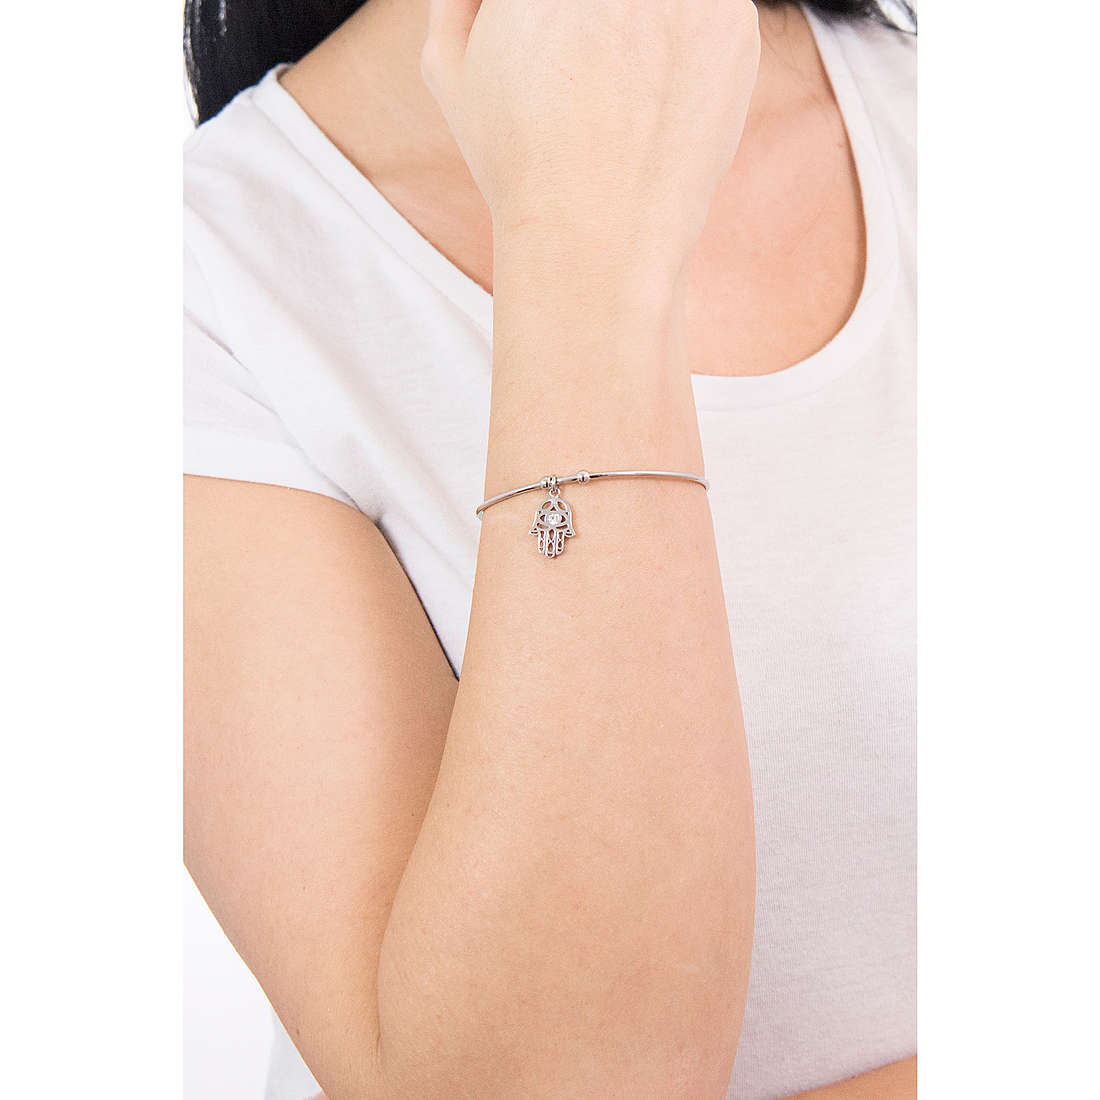 Lotus Style bracelets Millennial woman LS2015-2/6 wearing